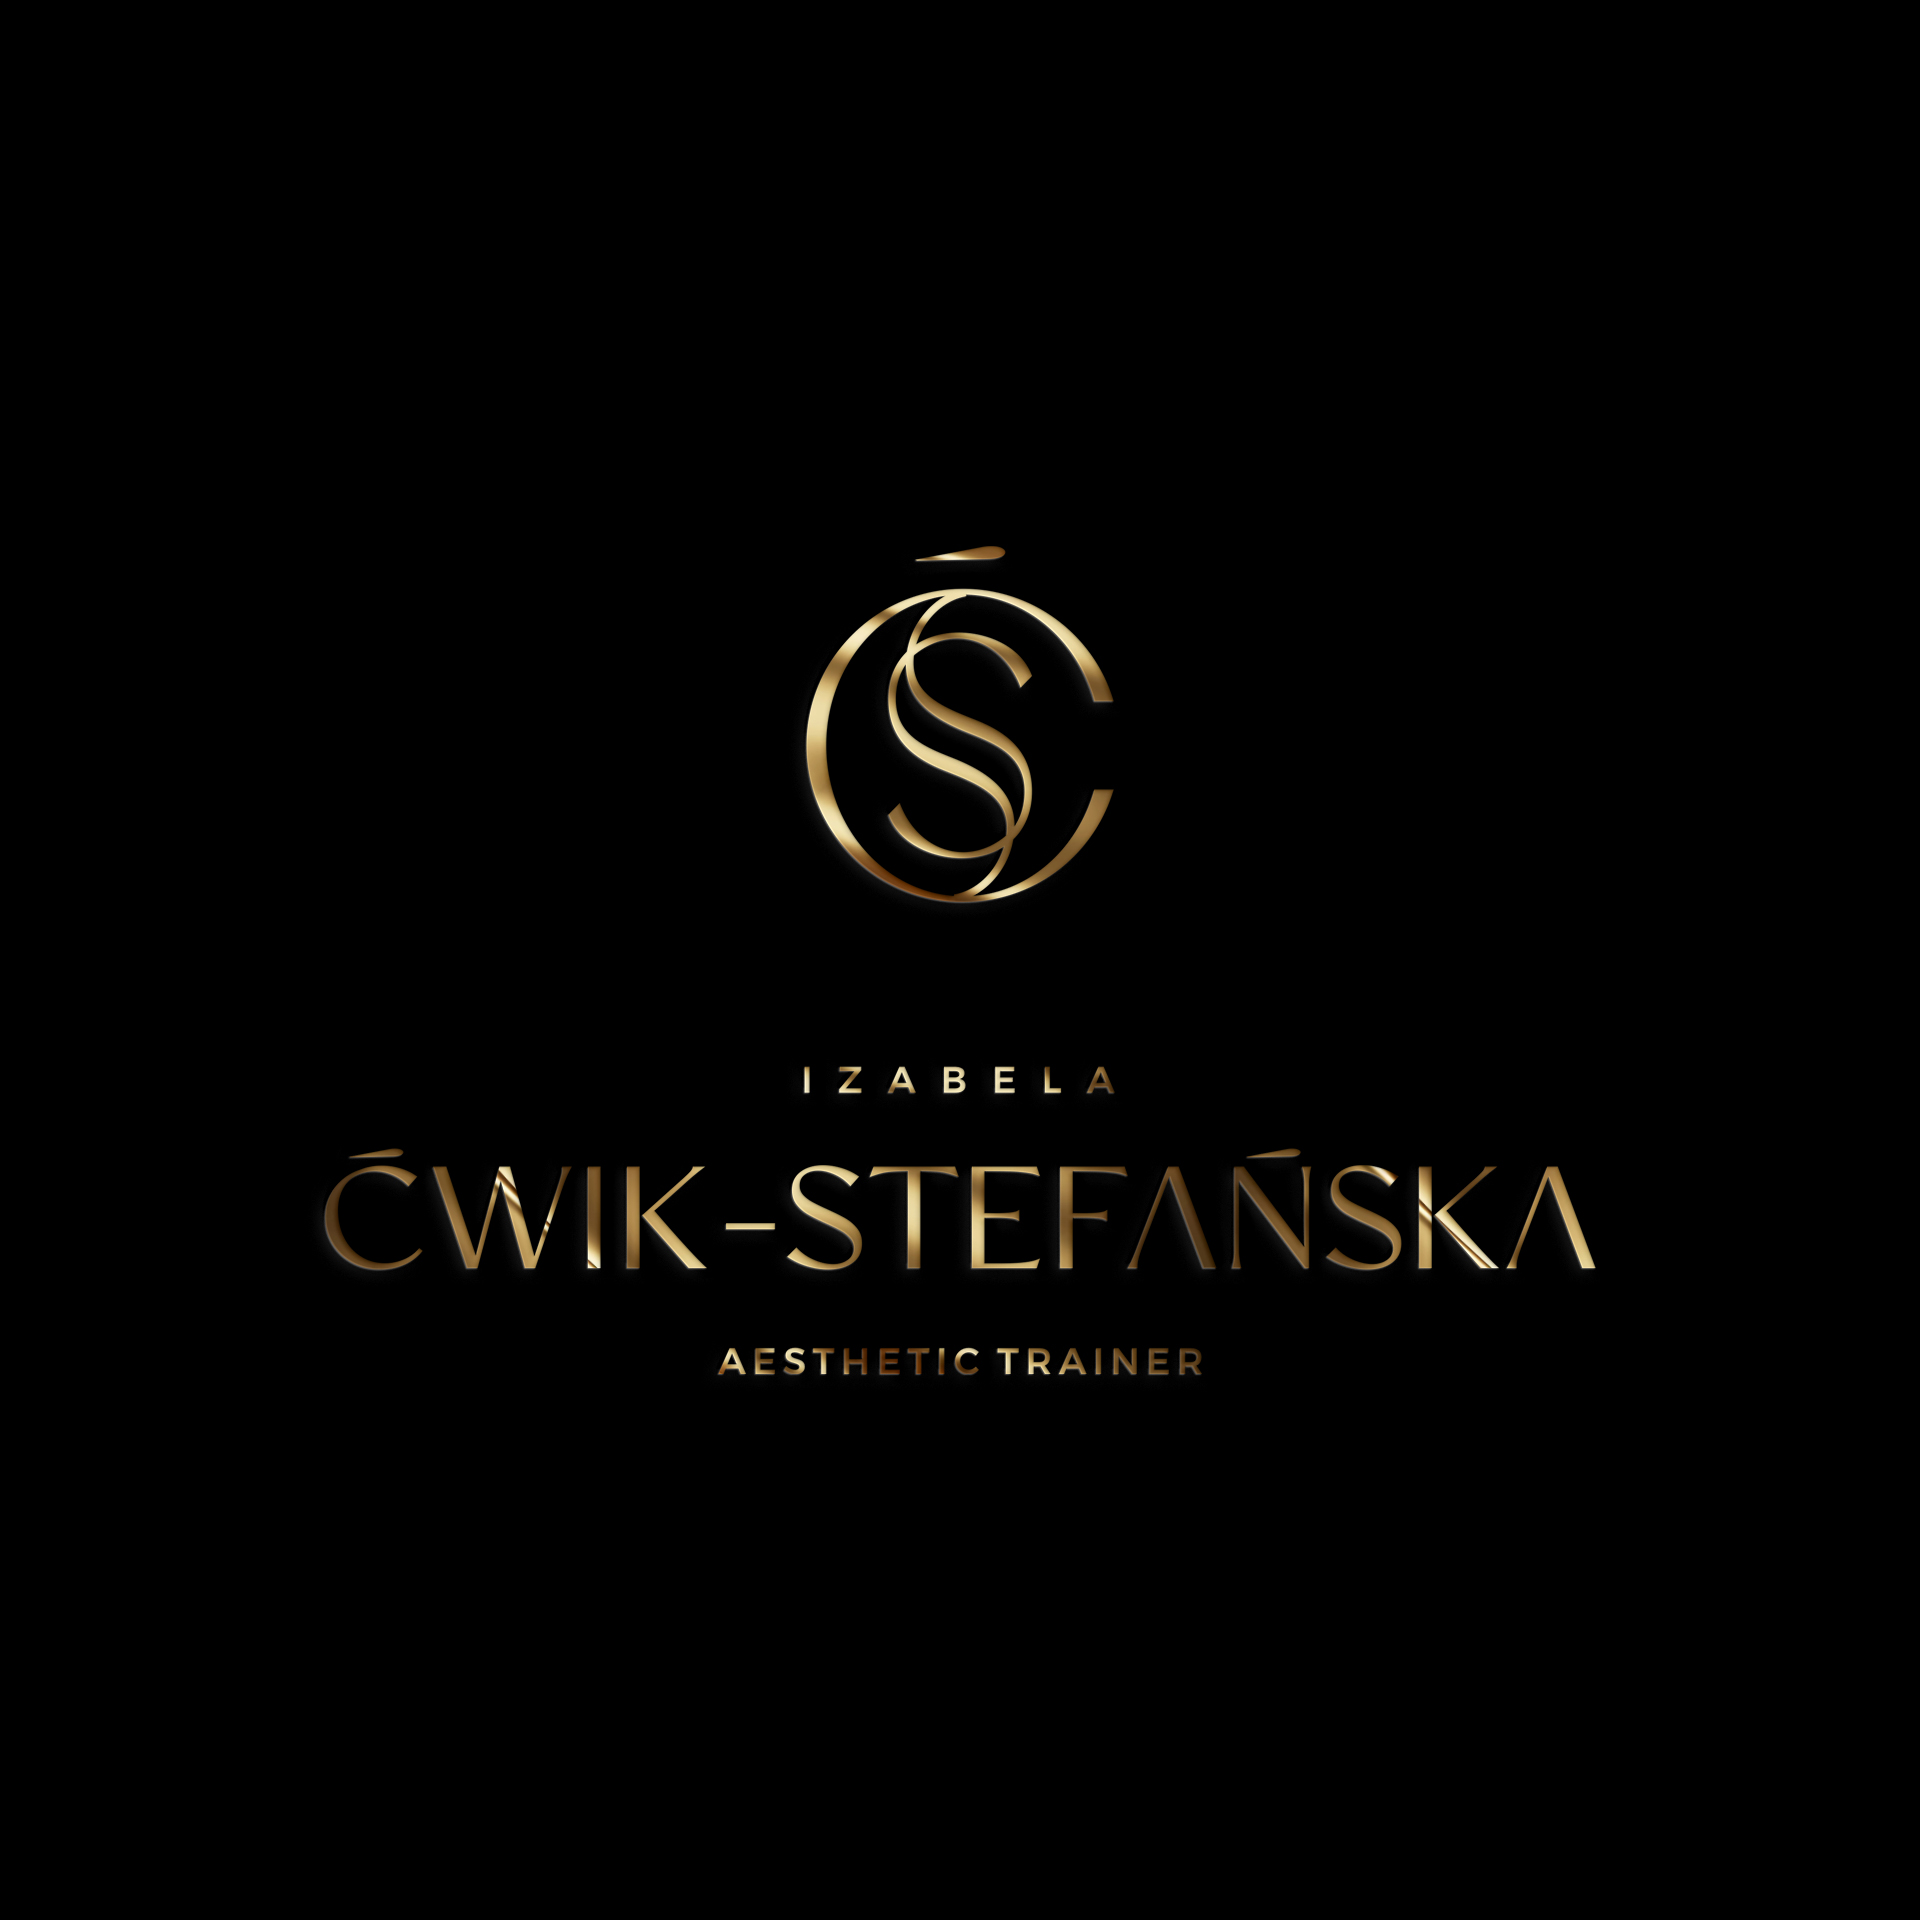 Logo DESIGN OF BEAUTY IZABELA ĆWIK-STEFAŃSKA